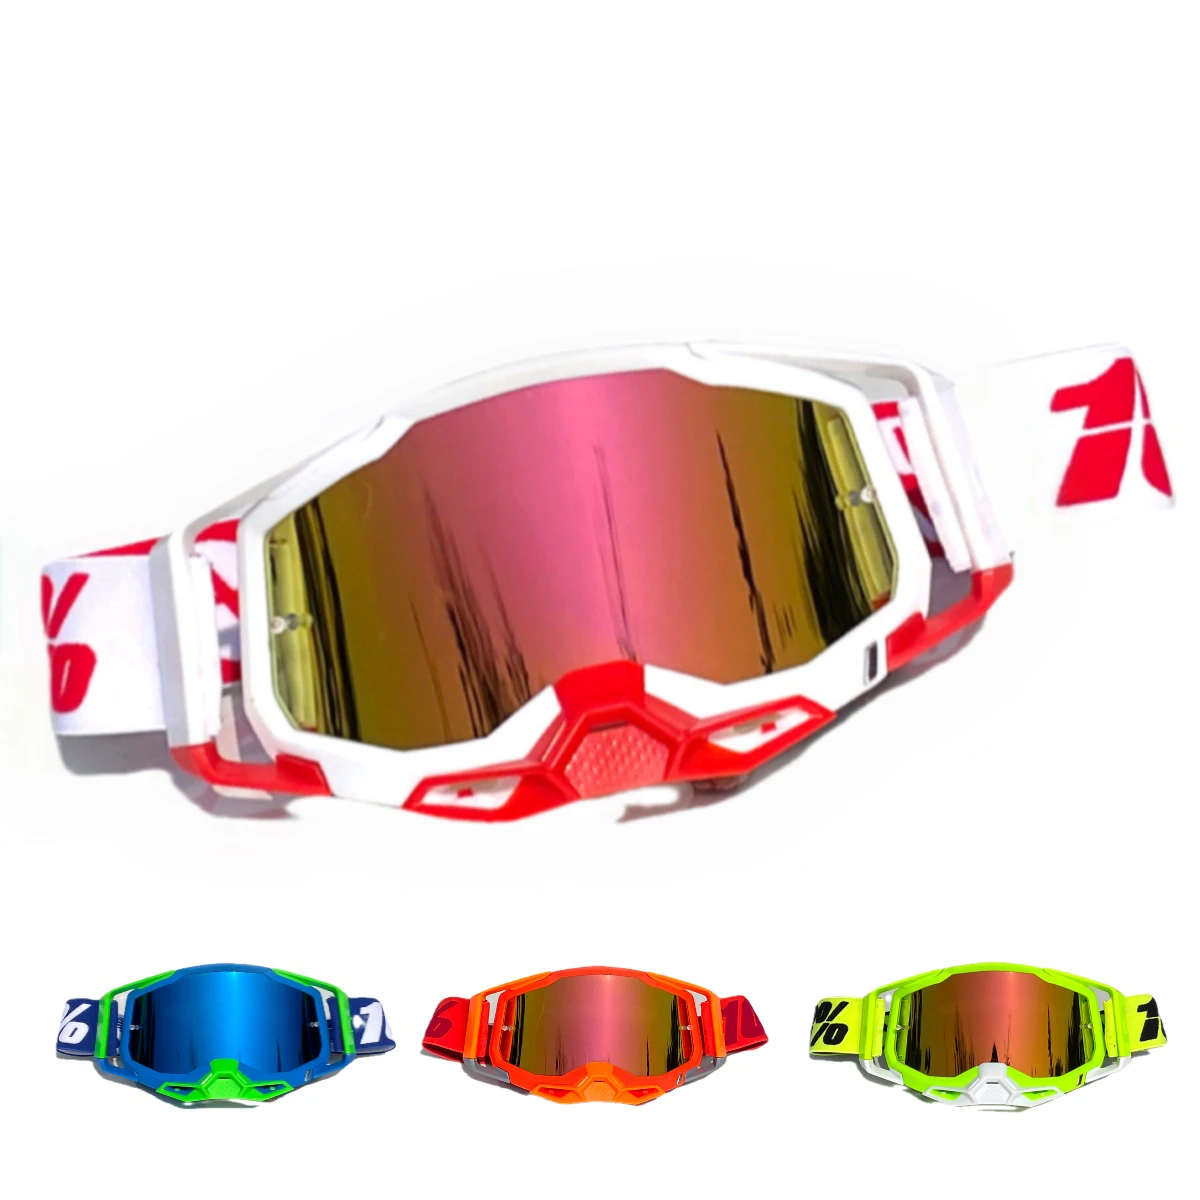 Новые мотоциклетные внедорожные очки Для верховой езды На открытом воздухе, Ветрозащитный шлем для лыжных соревнований, Очки с возможностью замены линз, несколько цветов Avai